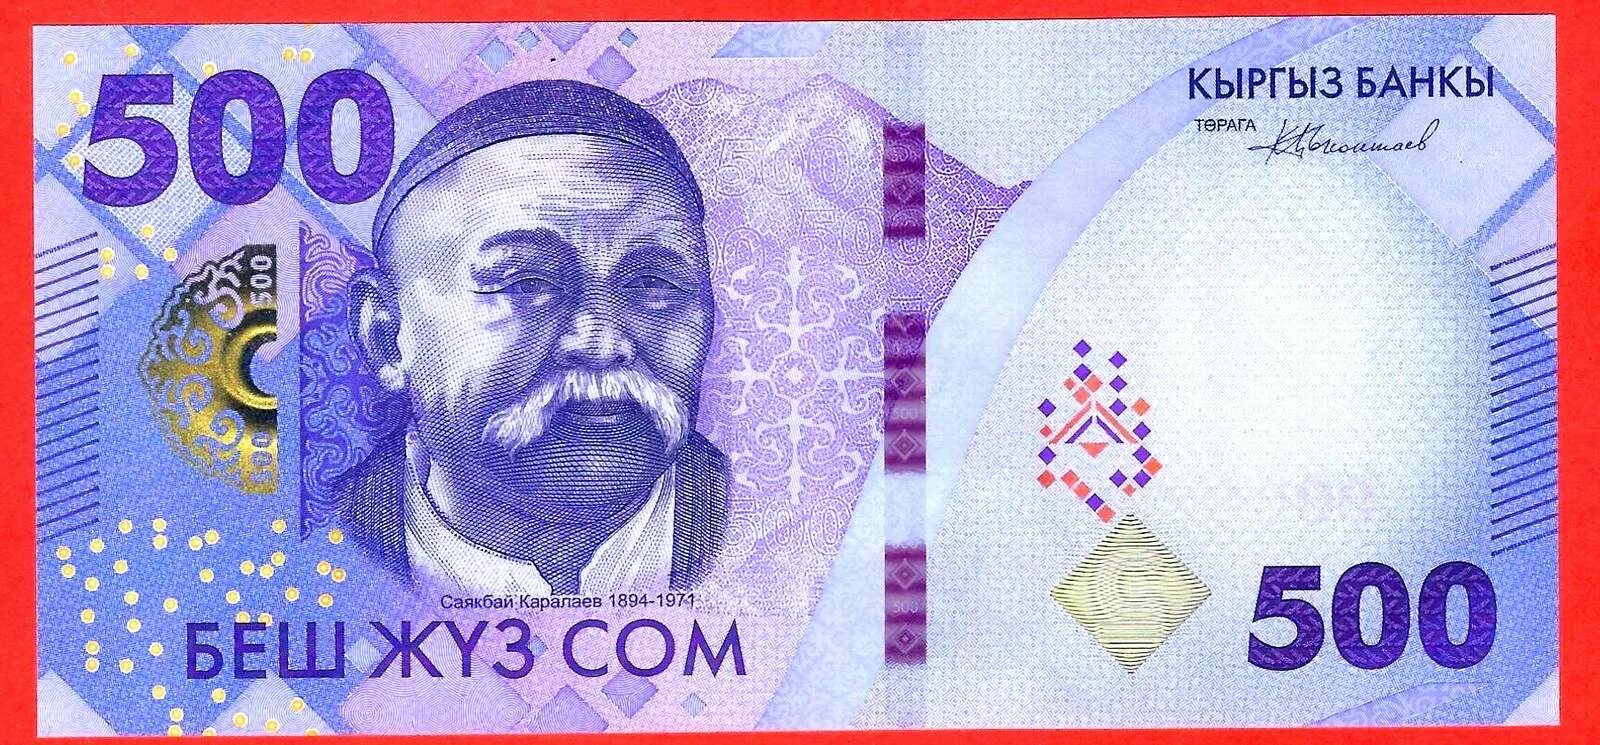 1000 Сомов Киргизии 2023. 200 Сом Киргизия 2023. Банкнота Киргизии 1000 сом 2023. Кыргызкий 500 сом. Киргизы 2023